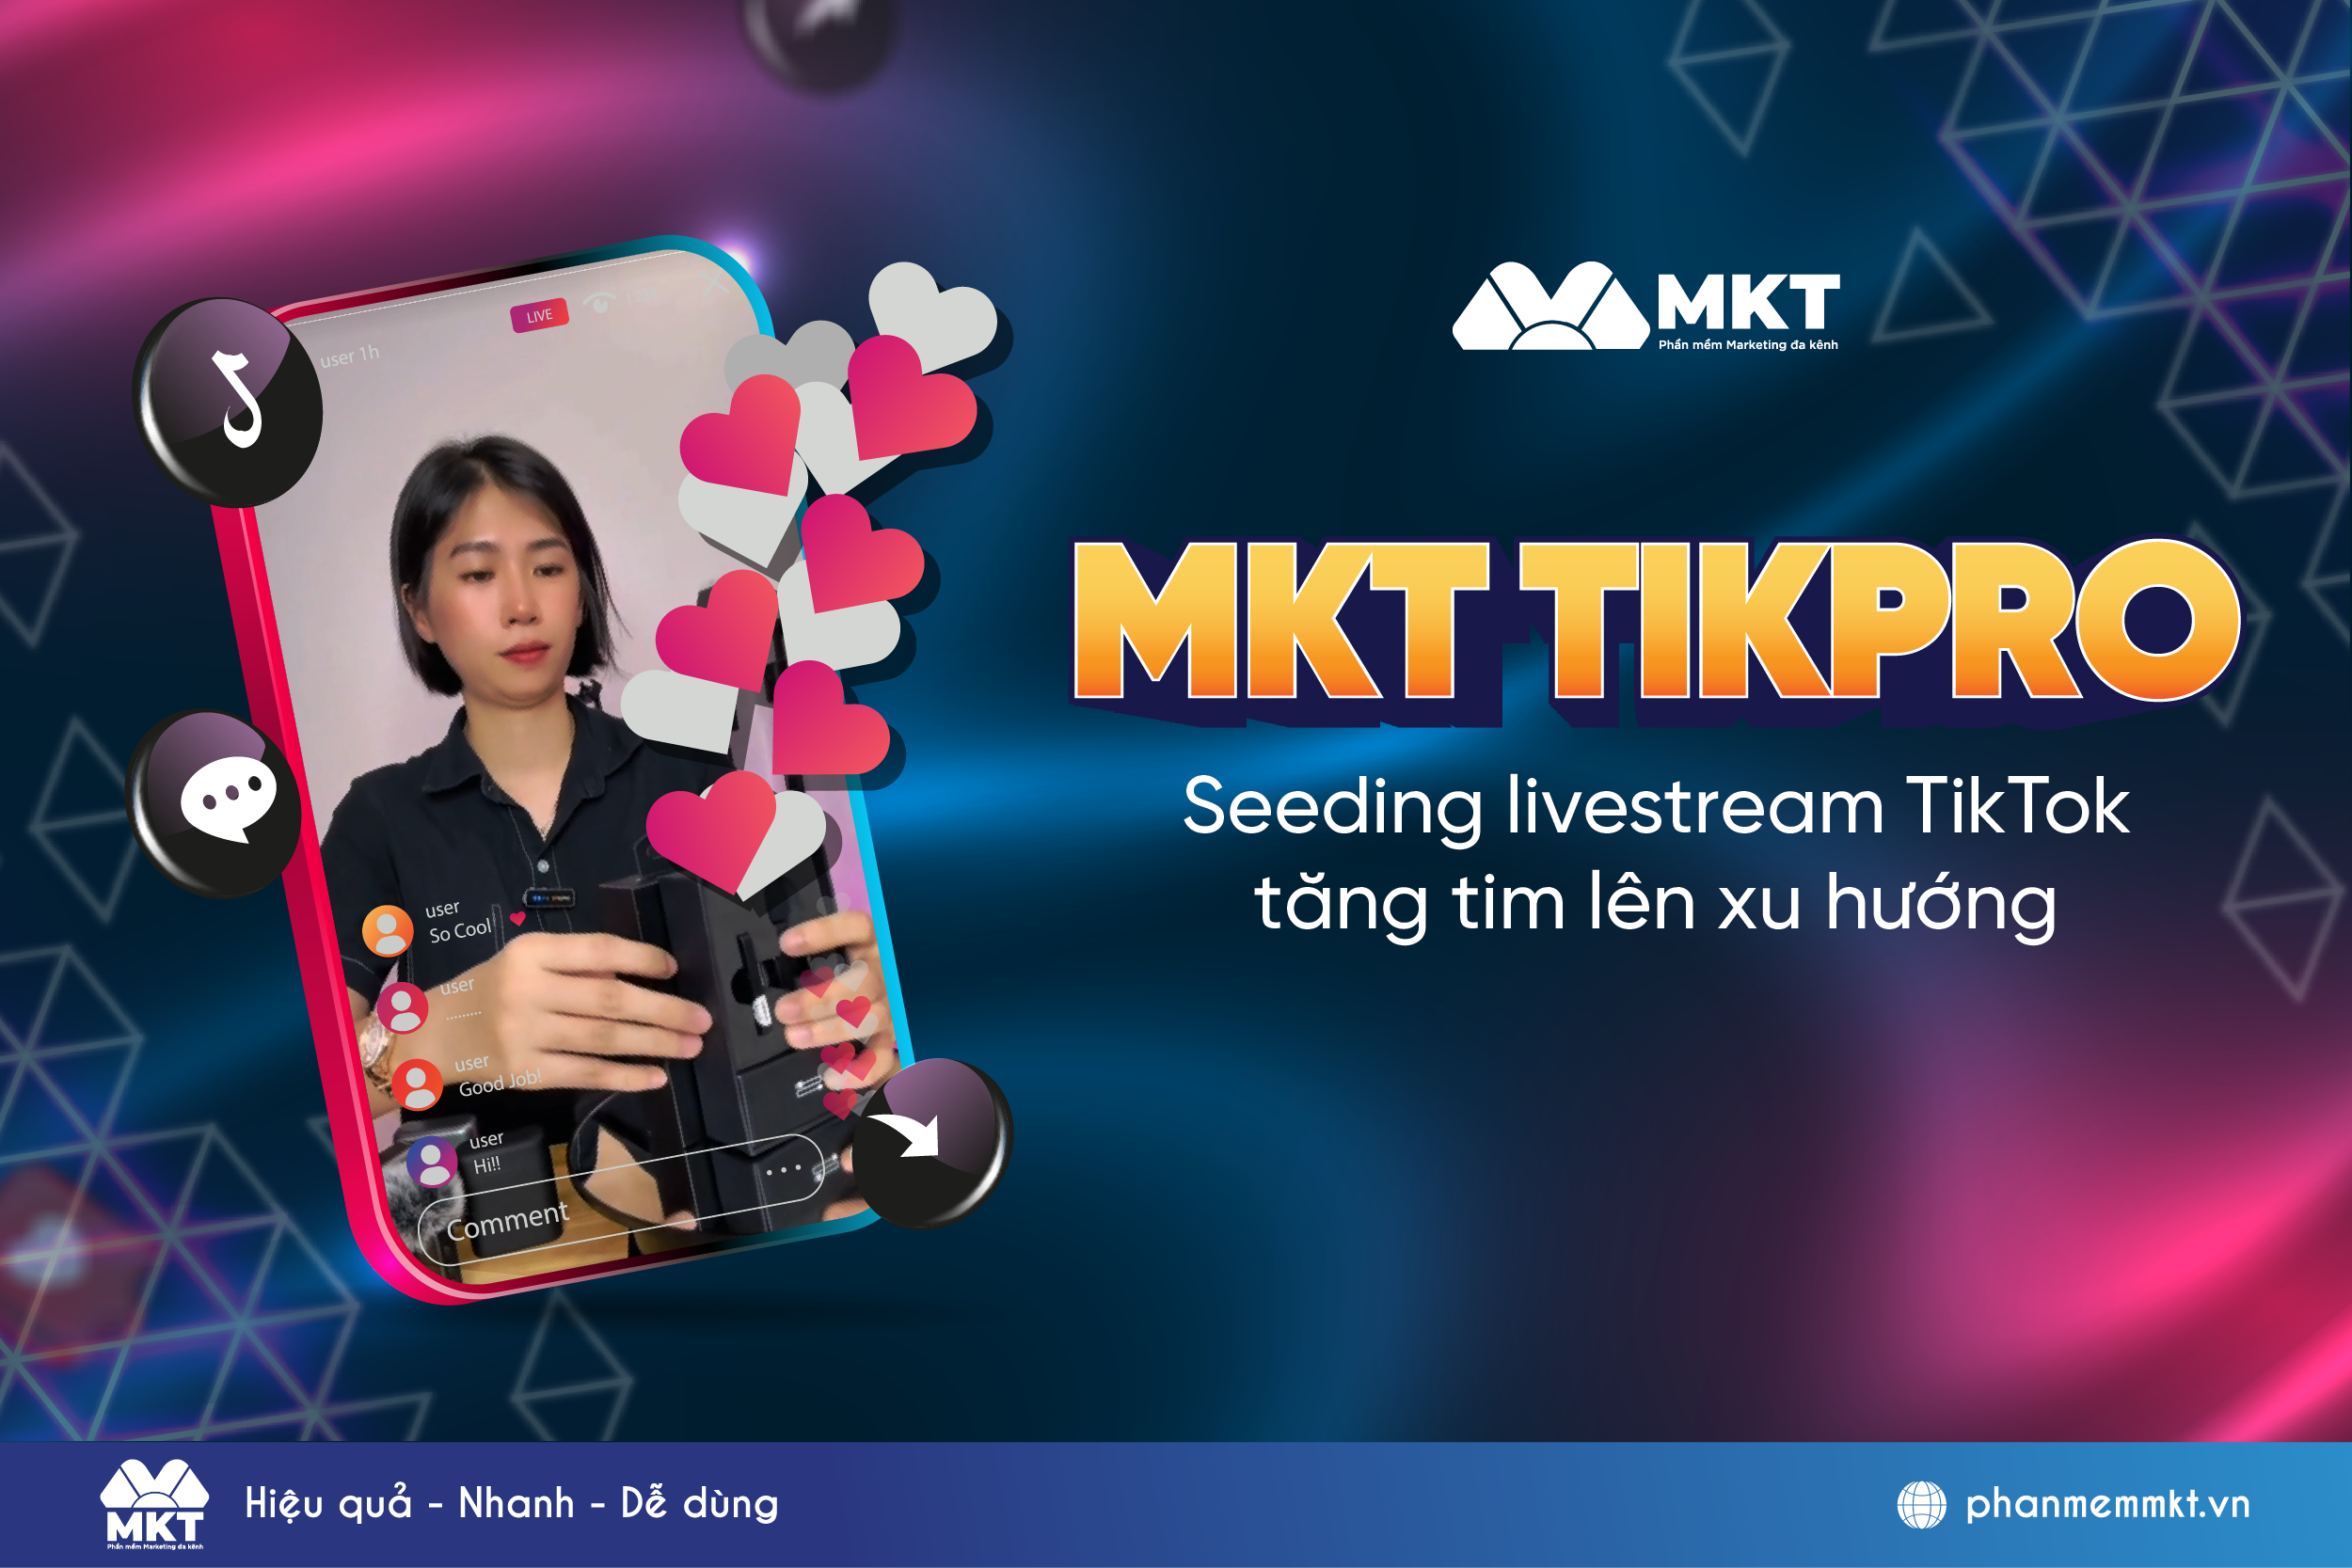 Phần mềm MKT TikPro dành cho ai?